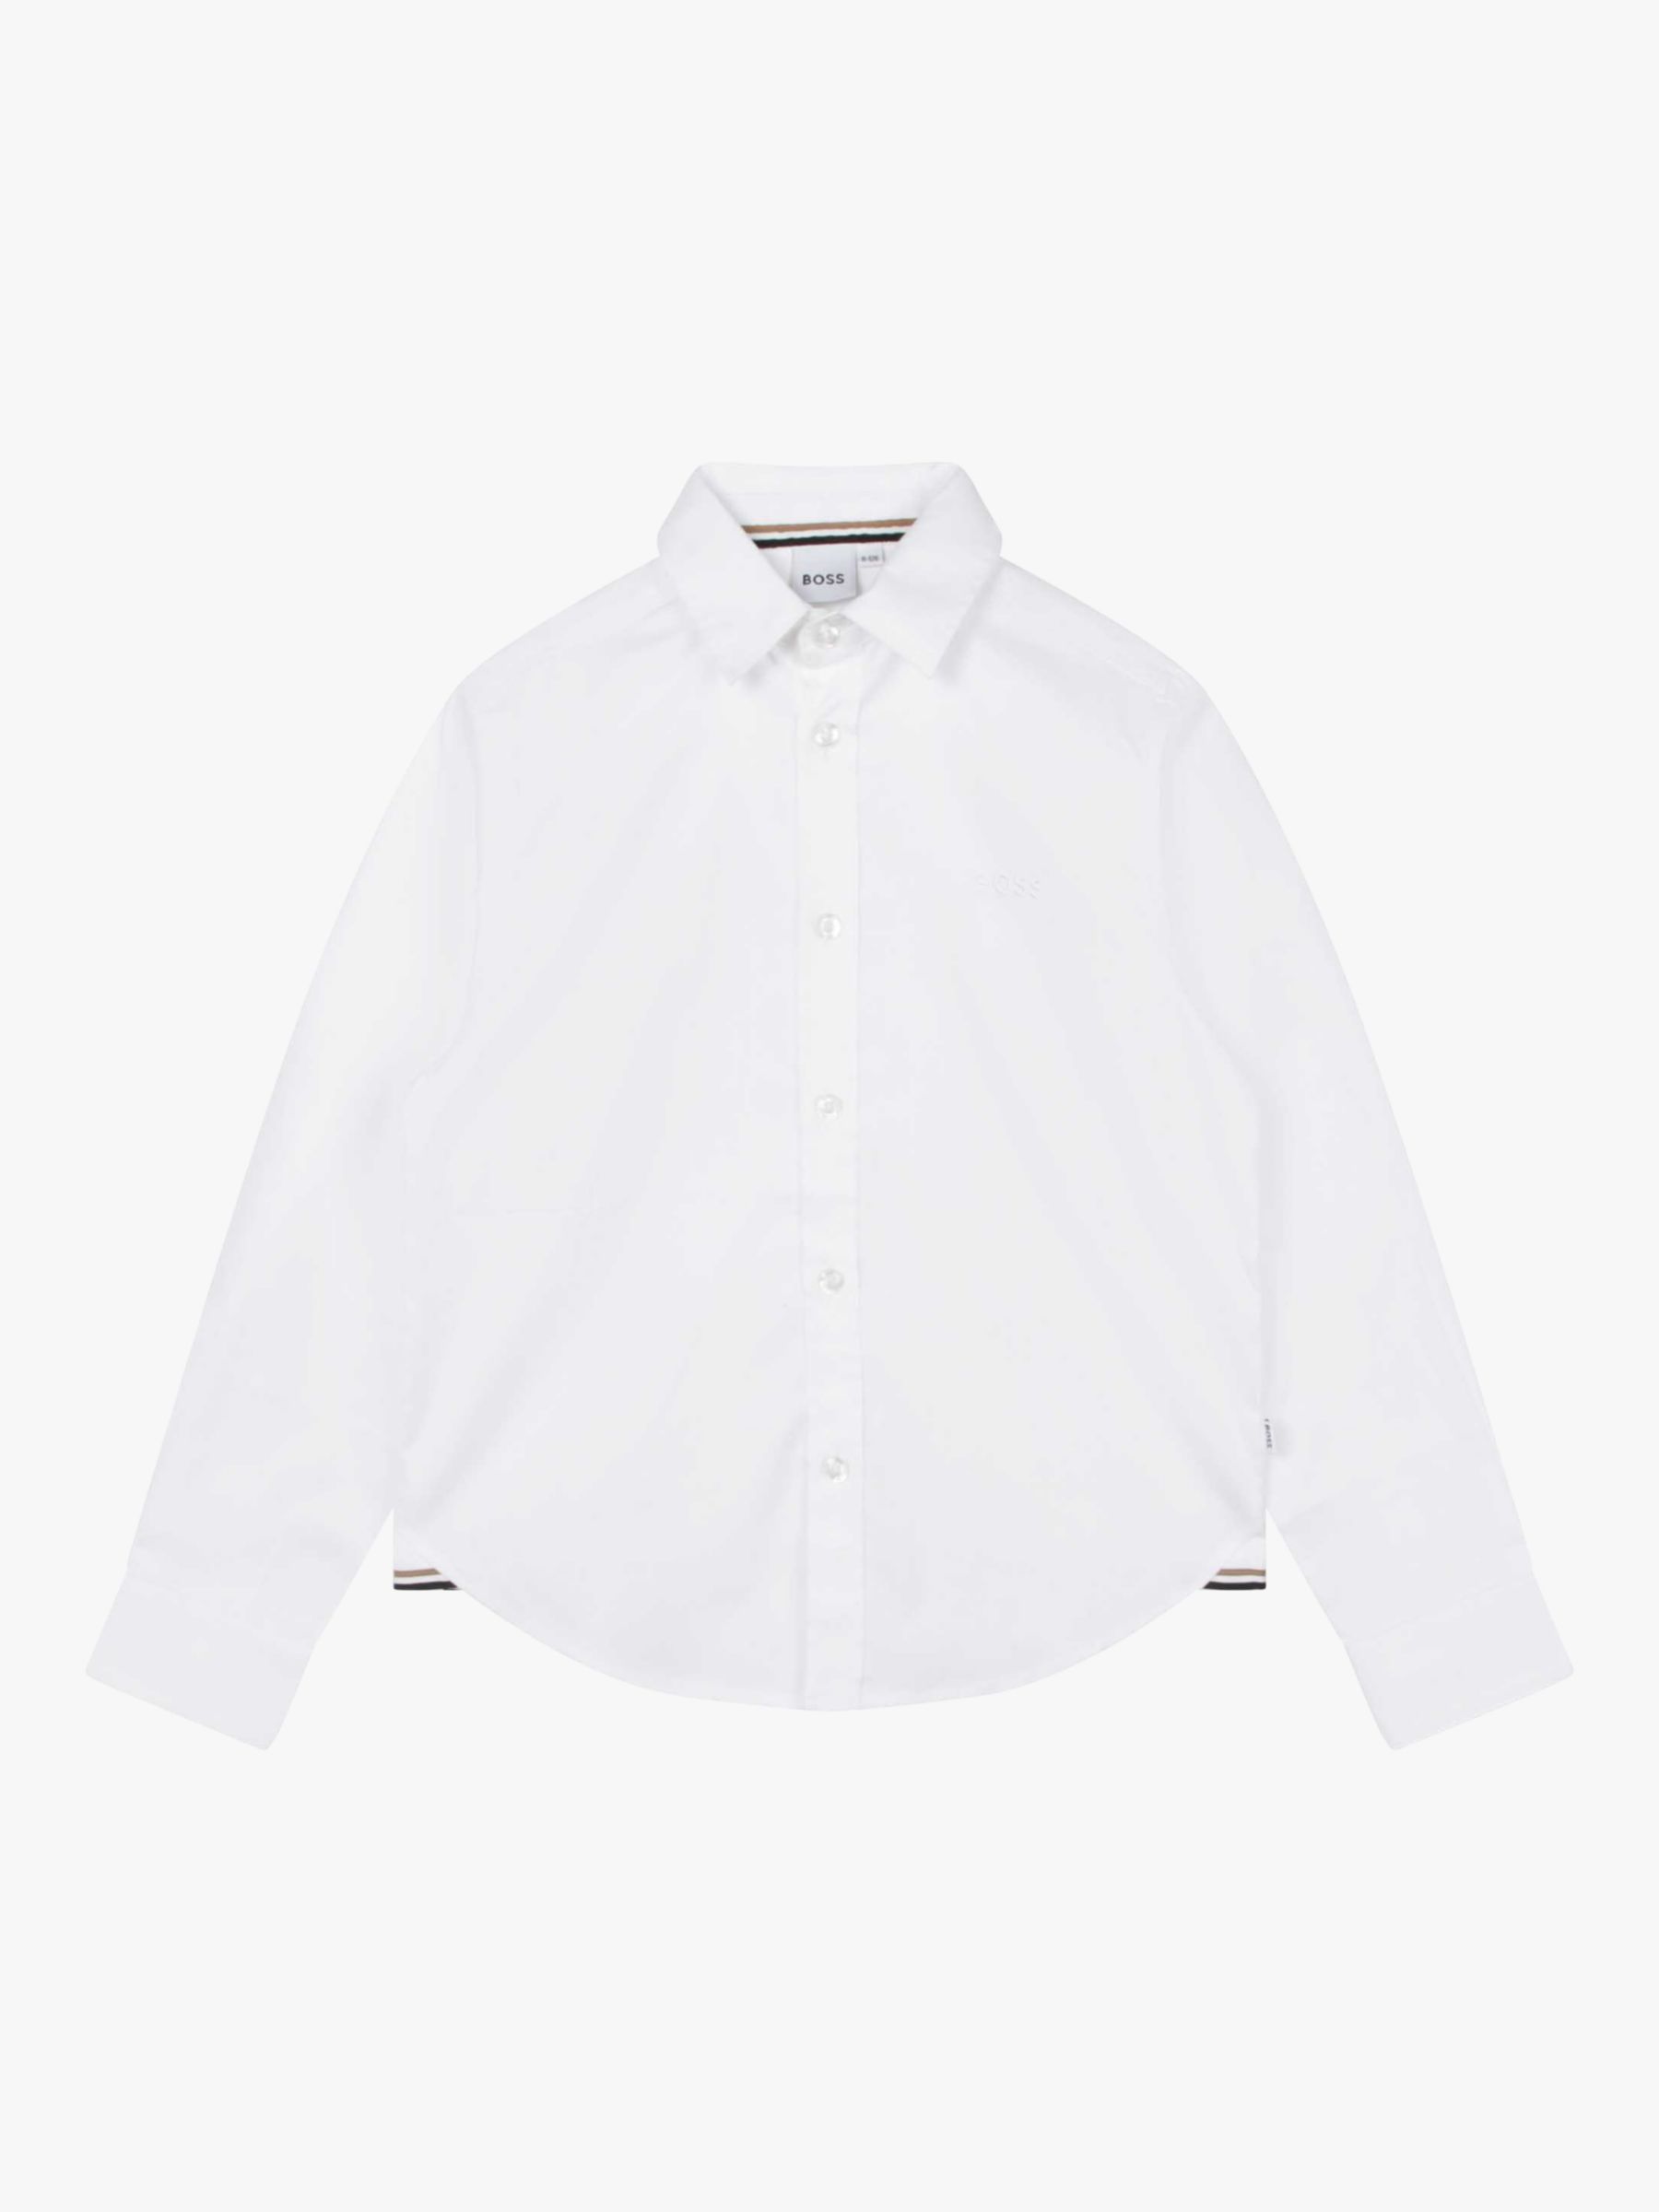 Детская оксфордская рубашка BOSS с длинным рукавом HUGO BOSS, белый рубашка зауженная из ткани оксфорд с длинными рукавами xs синий